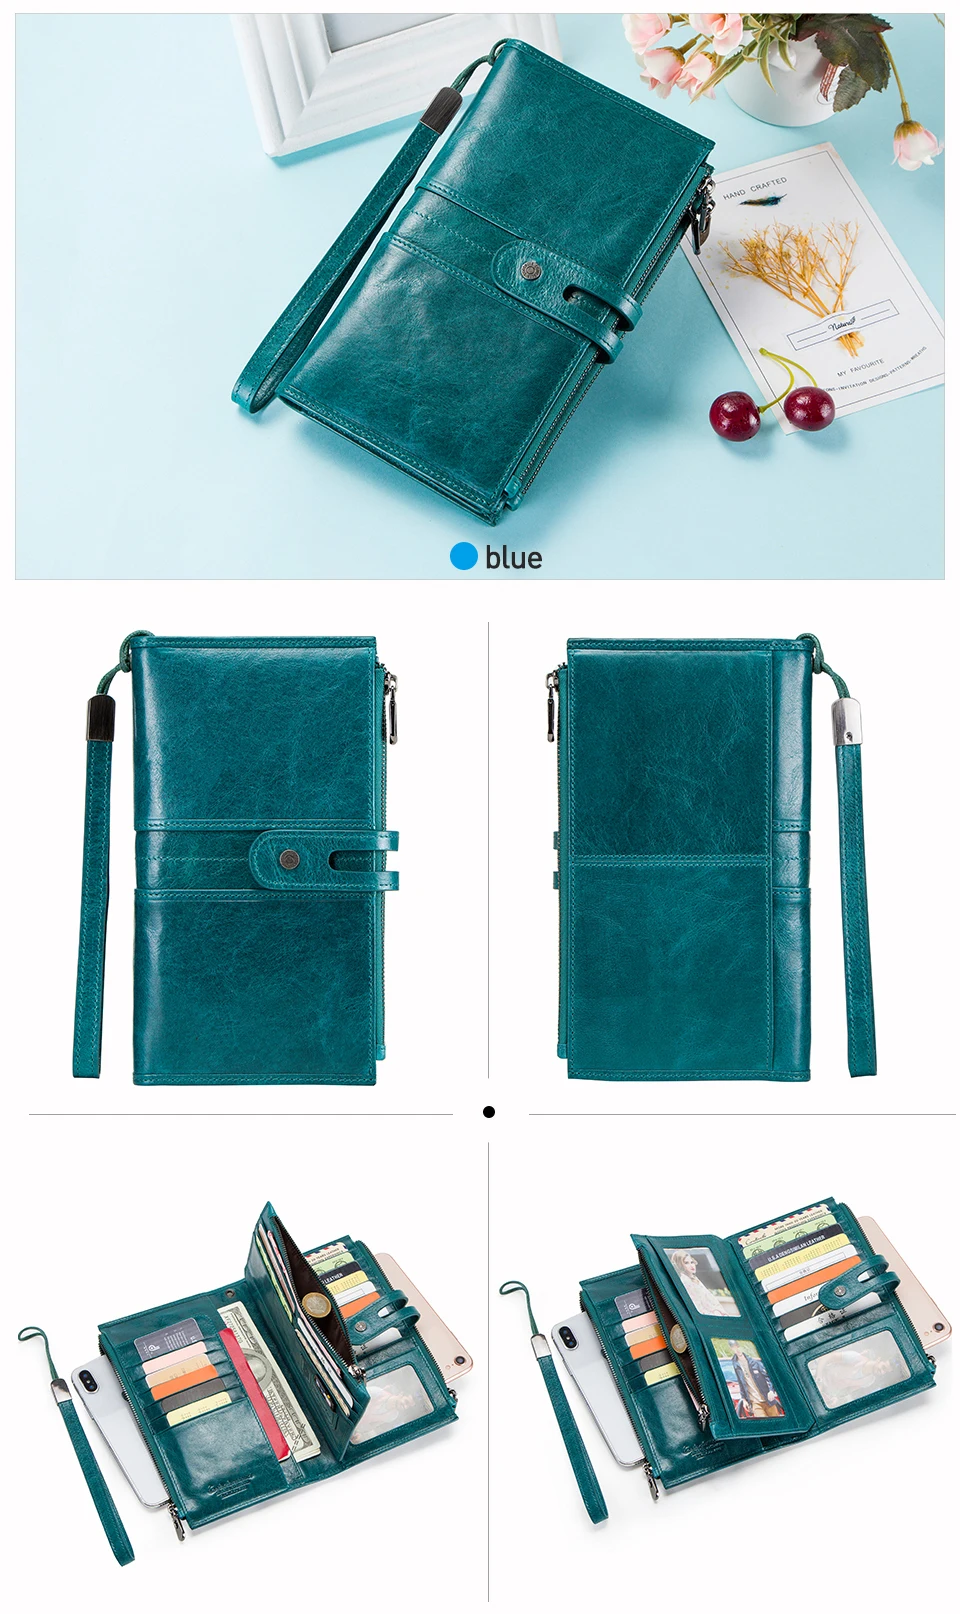 CONTACT'S Кошелек клатч из натуральной кожи с отделениями для хранения денег телефона и паспорта может быть использована как дорожная сумка